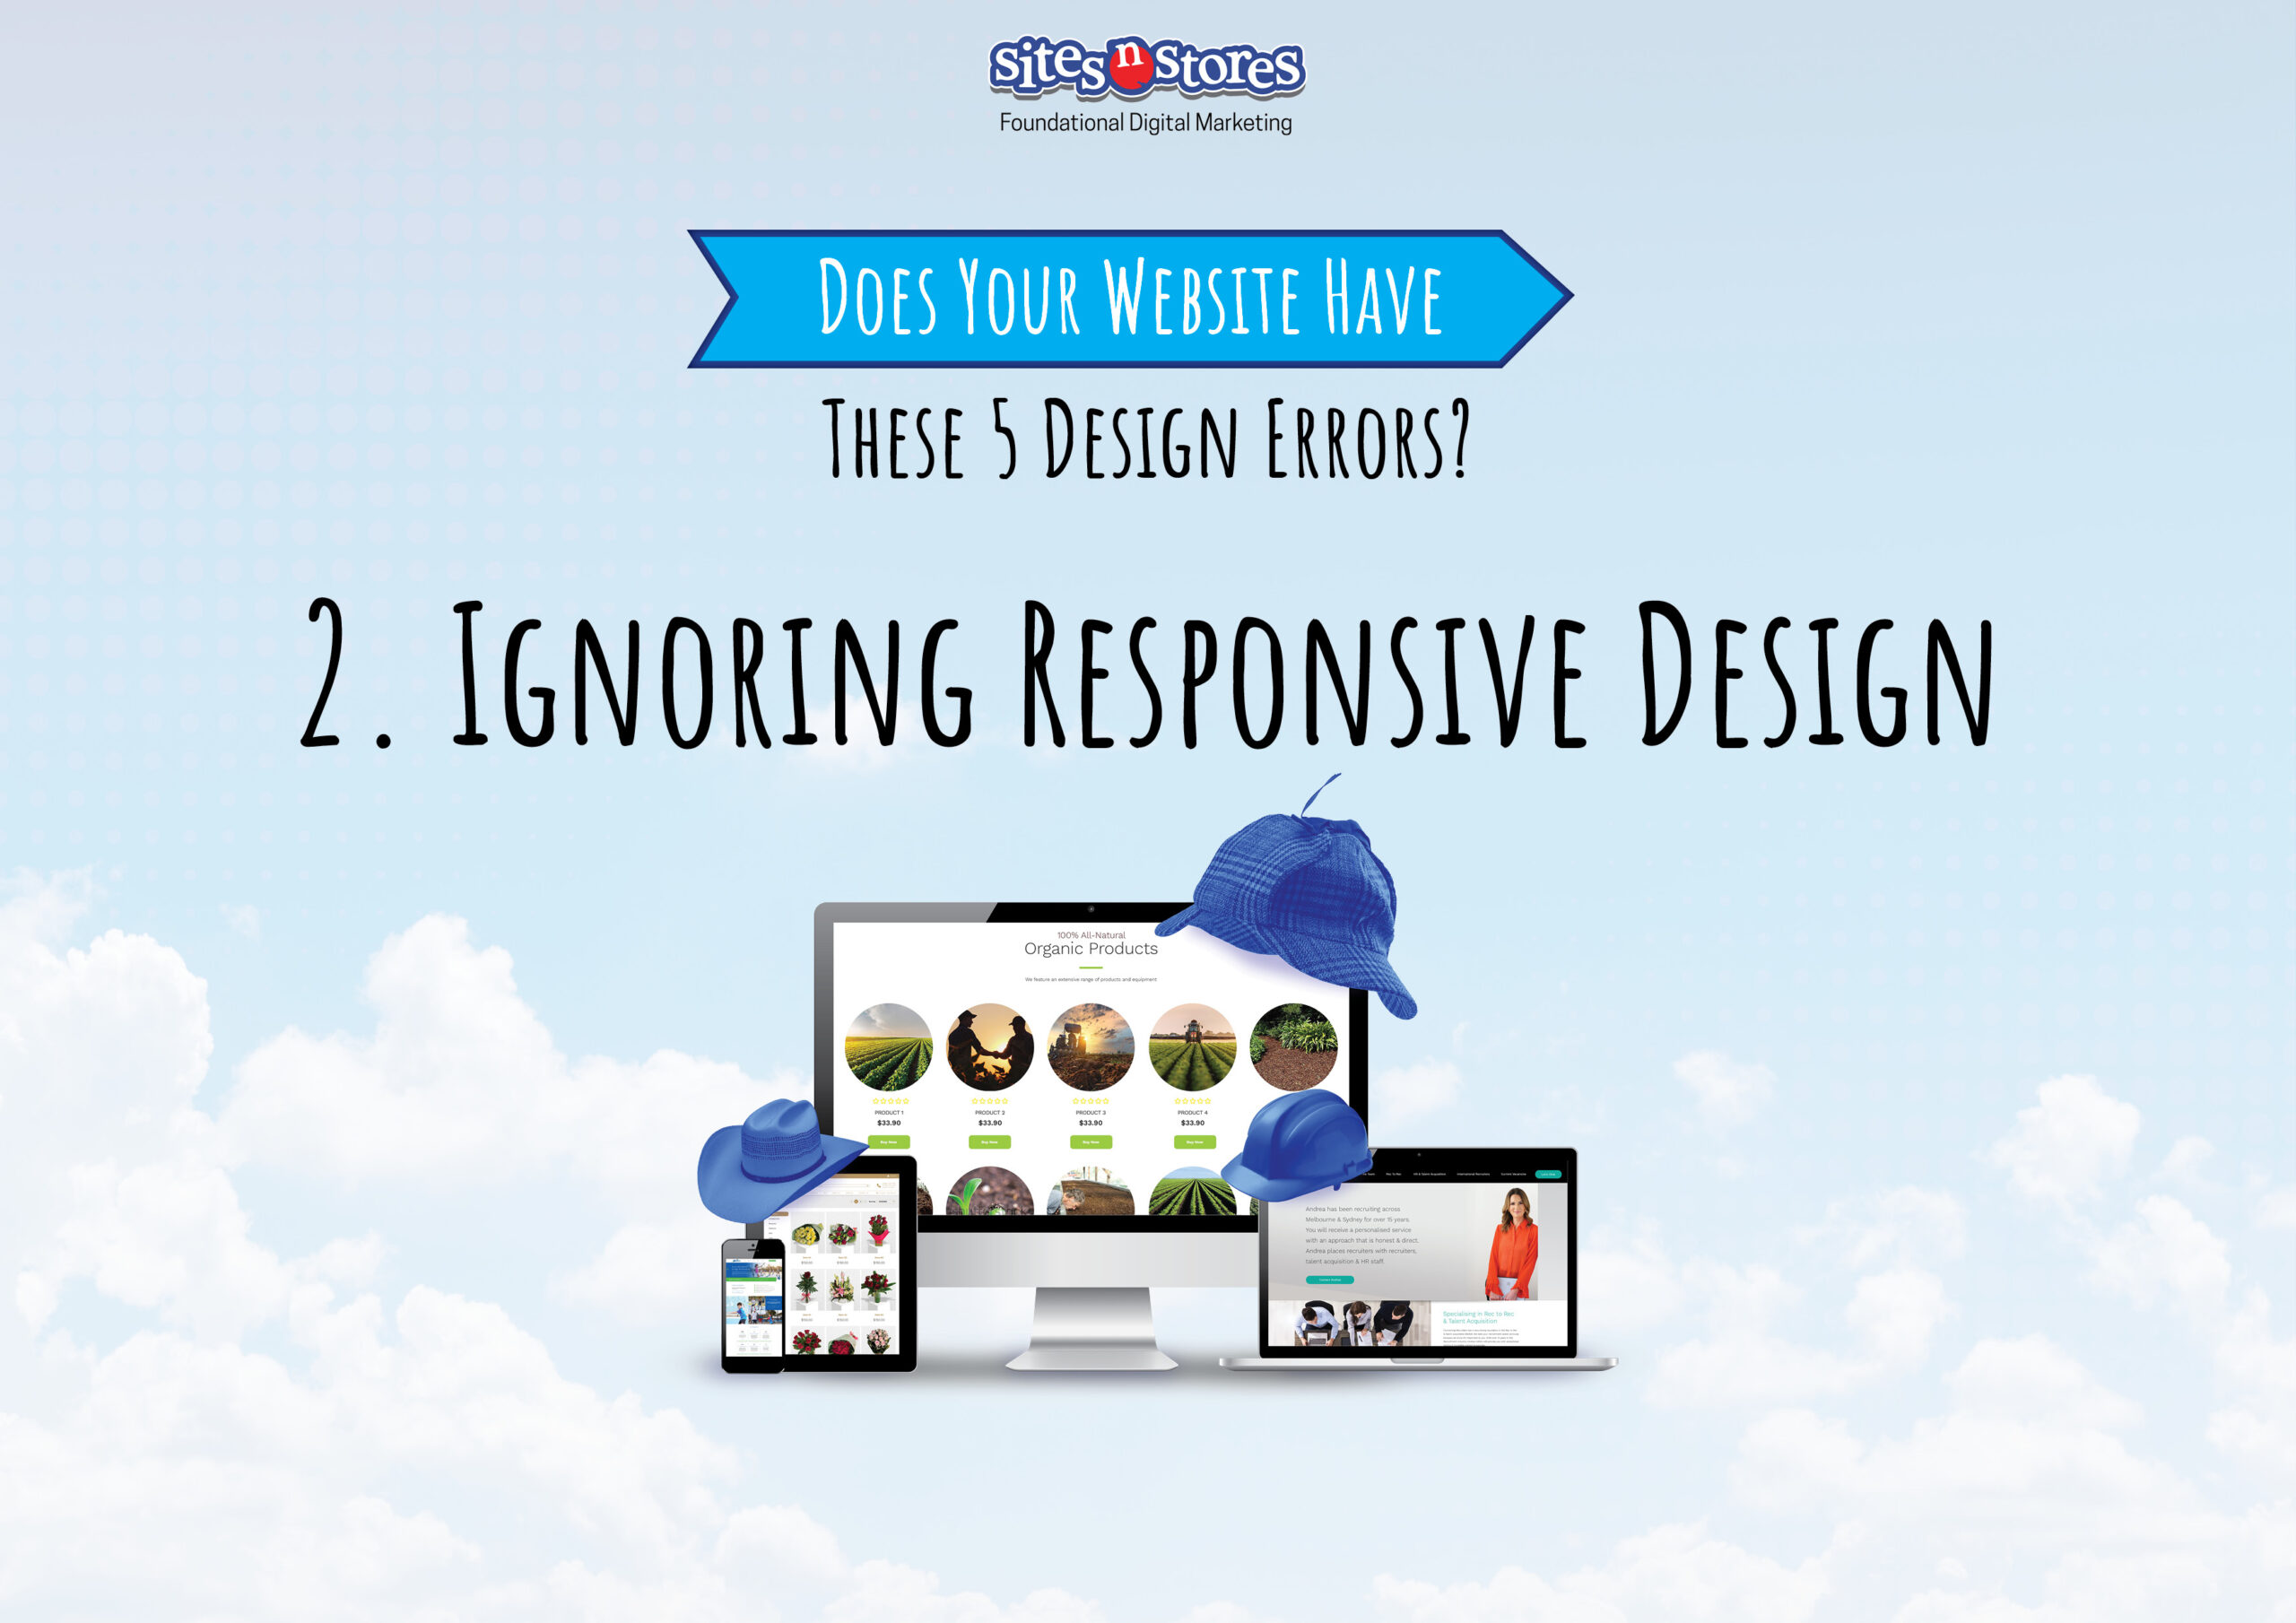 2. Ignoring Responsive Design